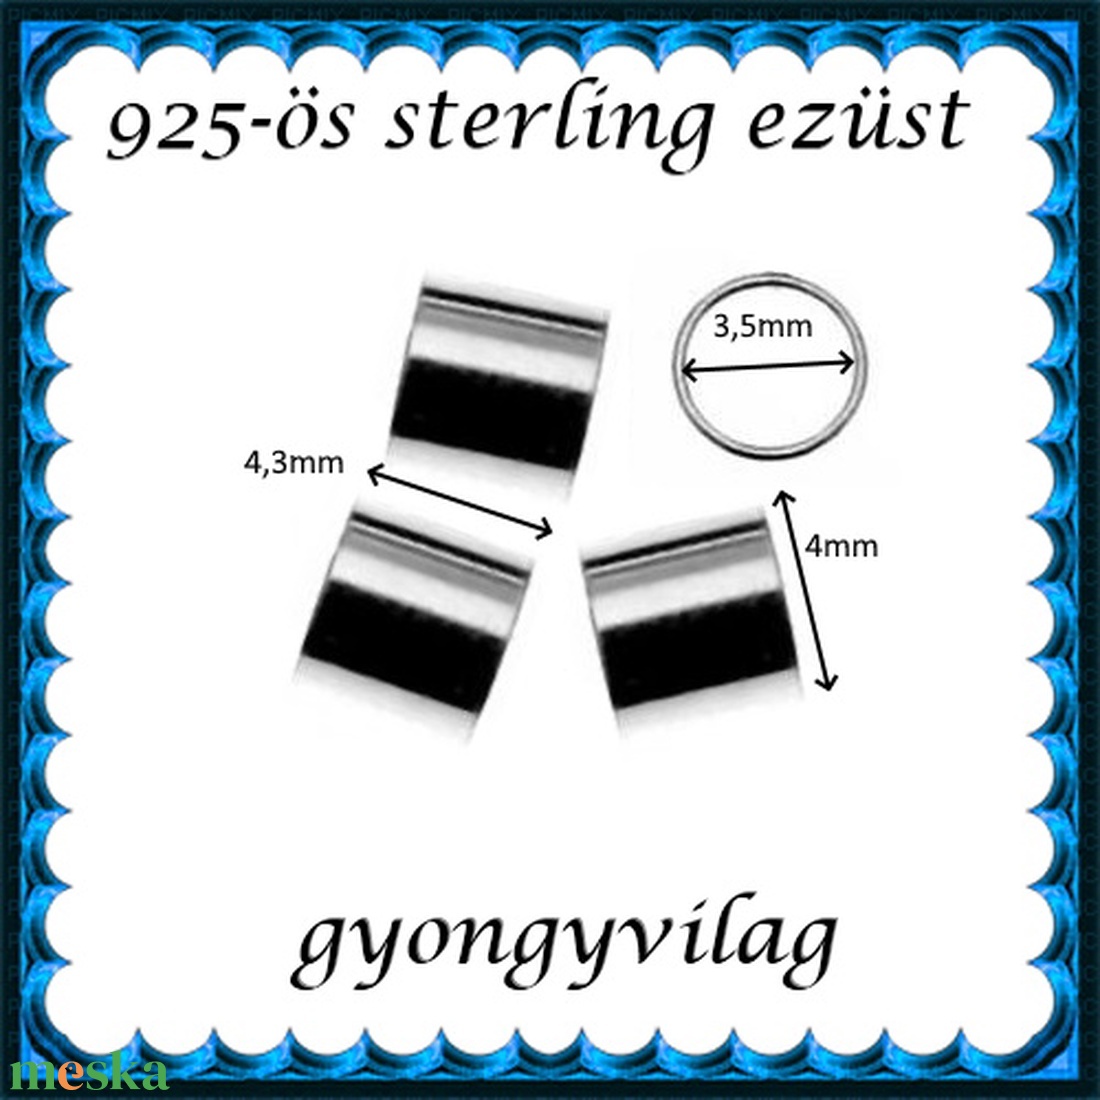 925-ös sterling ezüst ékszerkellék: köztes/gyöngy/díszitőelem EKÖ 19-4,3x4 2db/csomag - gyöngy, ékszerkellék - egyéb alkatrész - Meska.hu